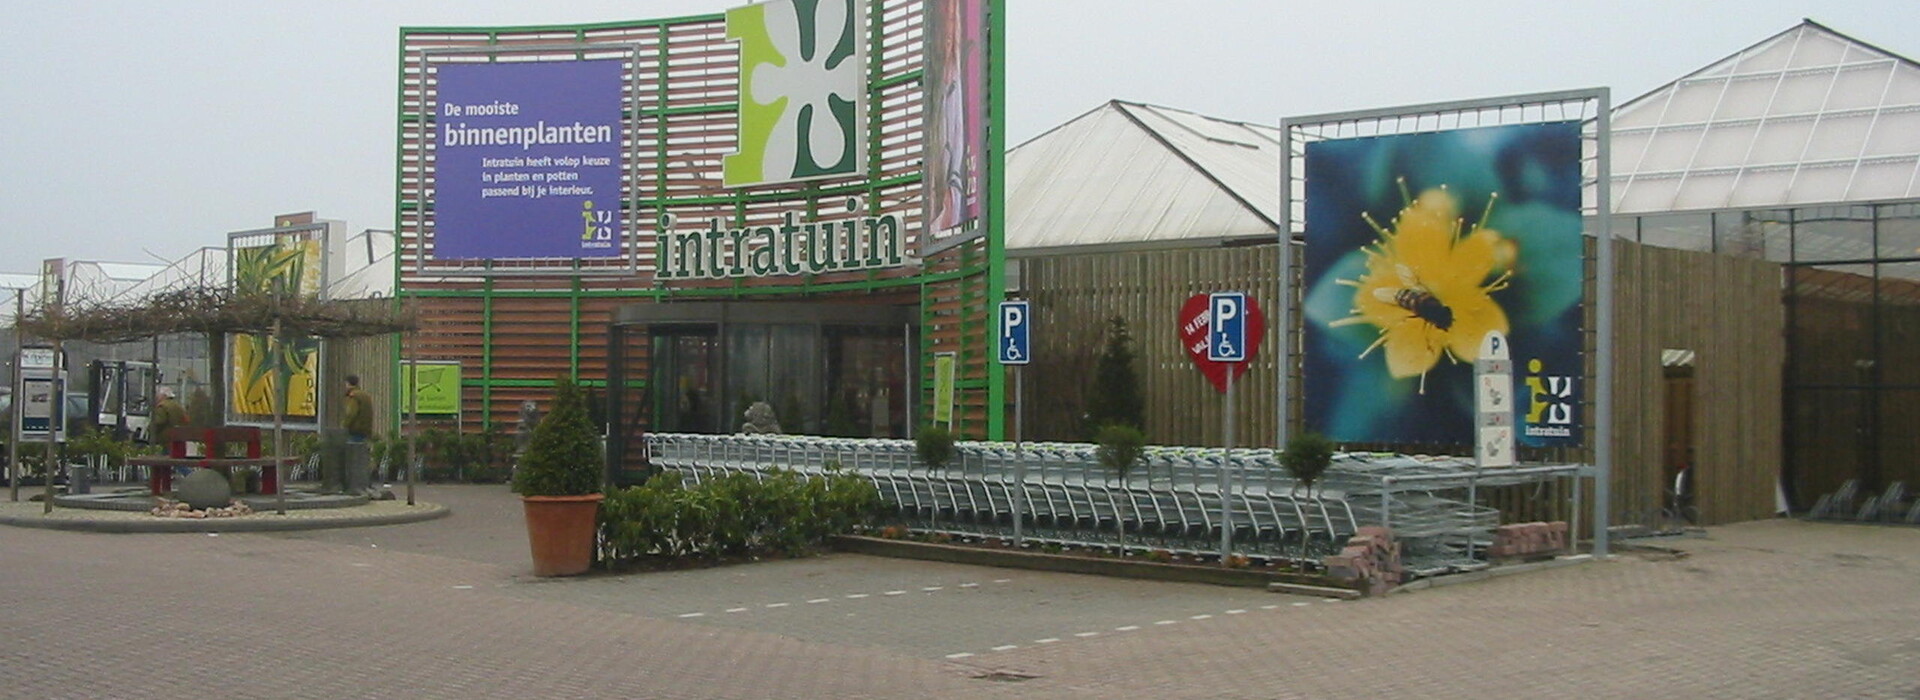 Neubau Intratuin, Breda (Niederlande) 1997